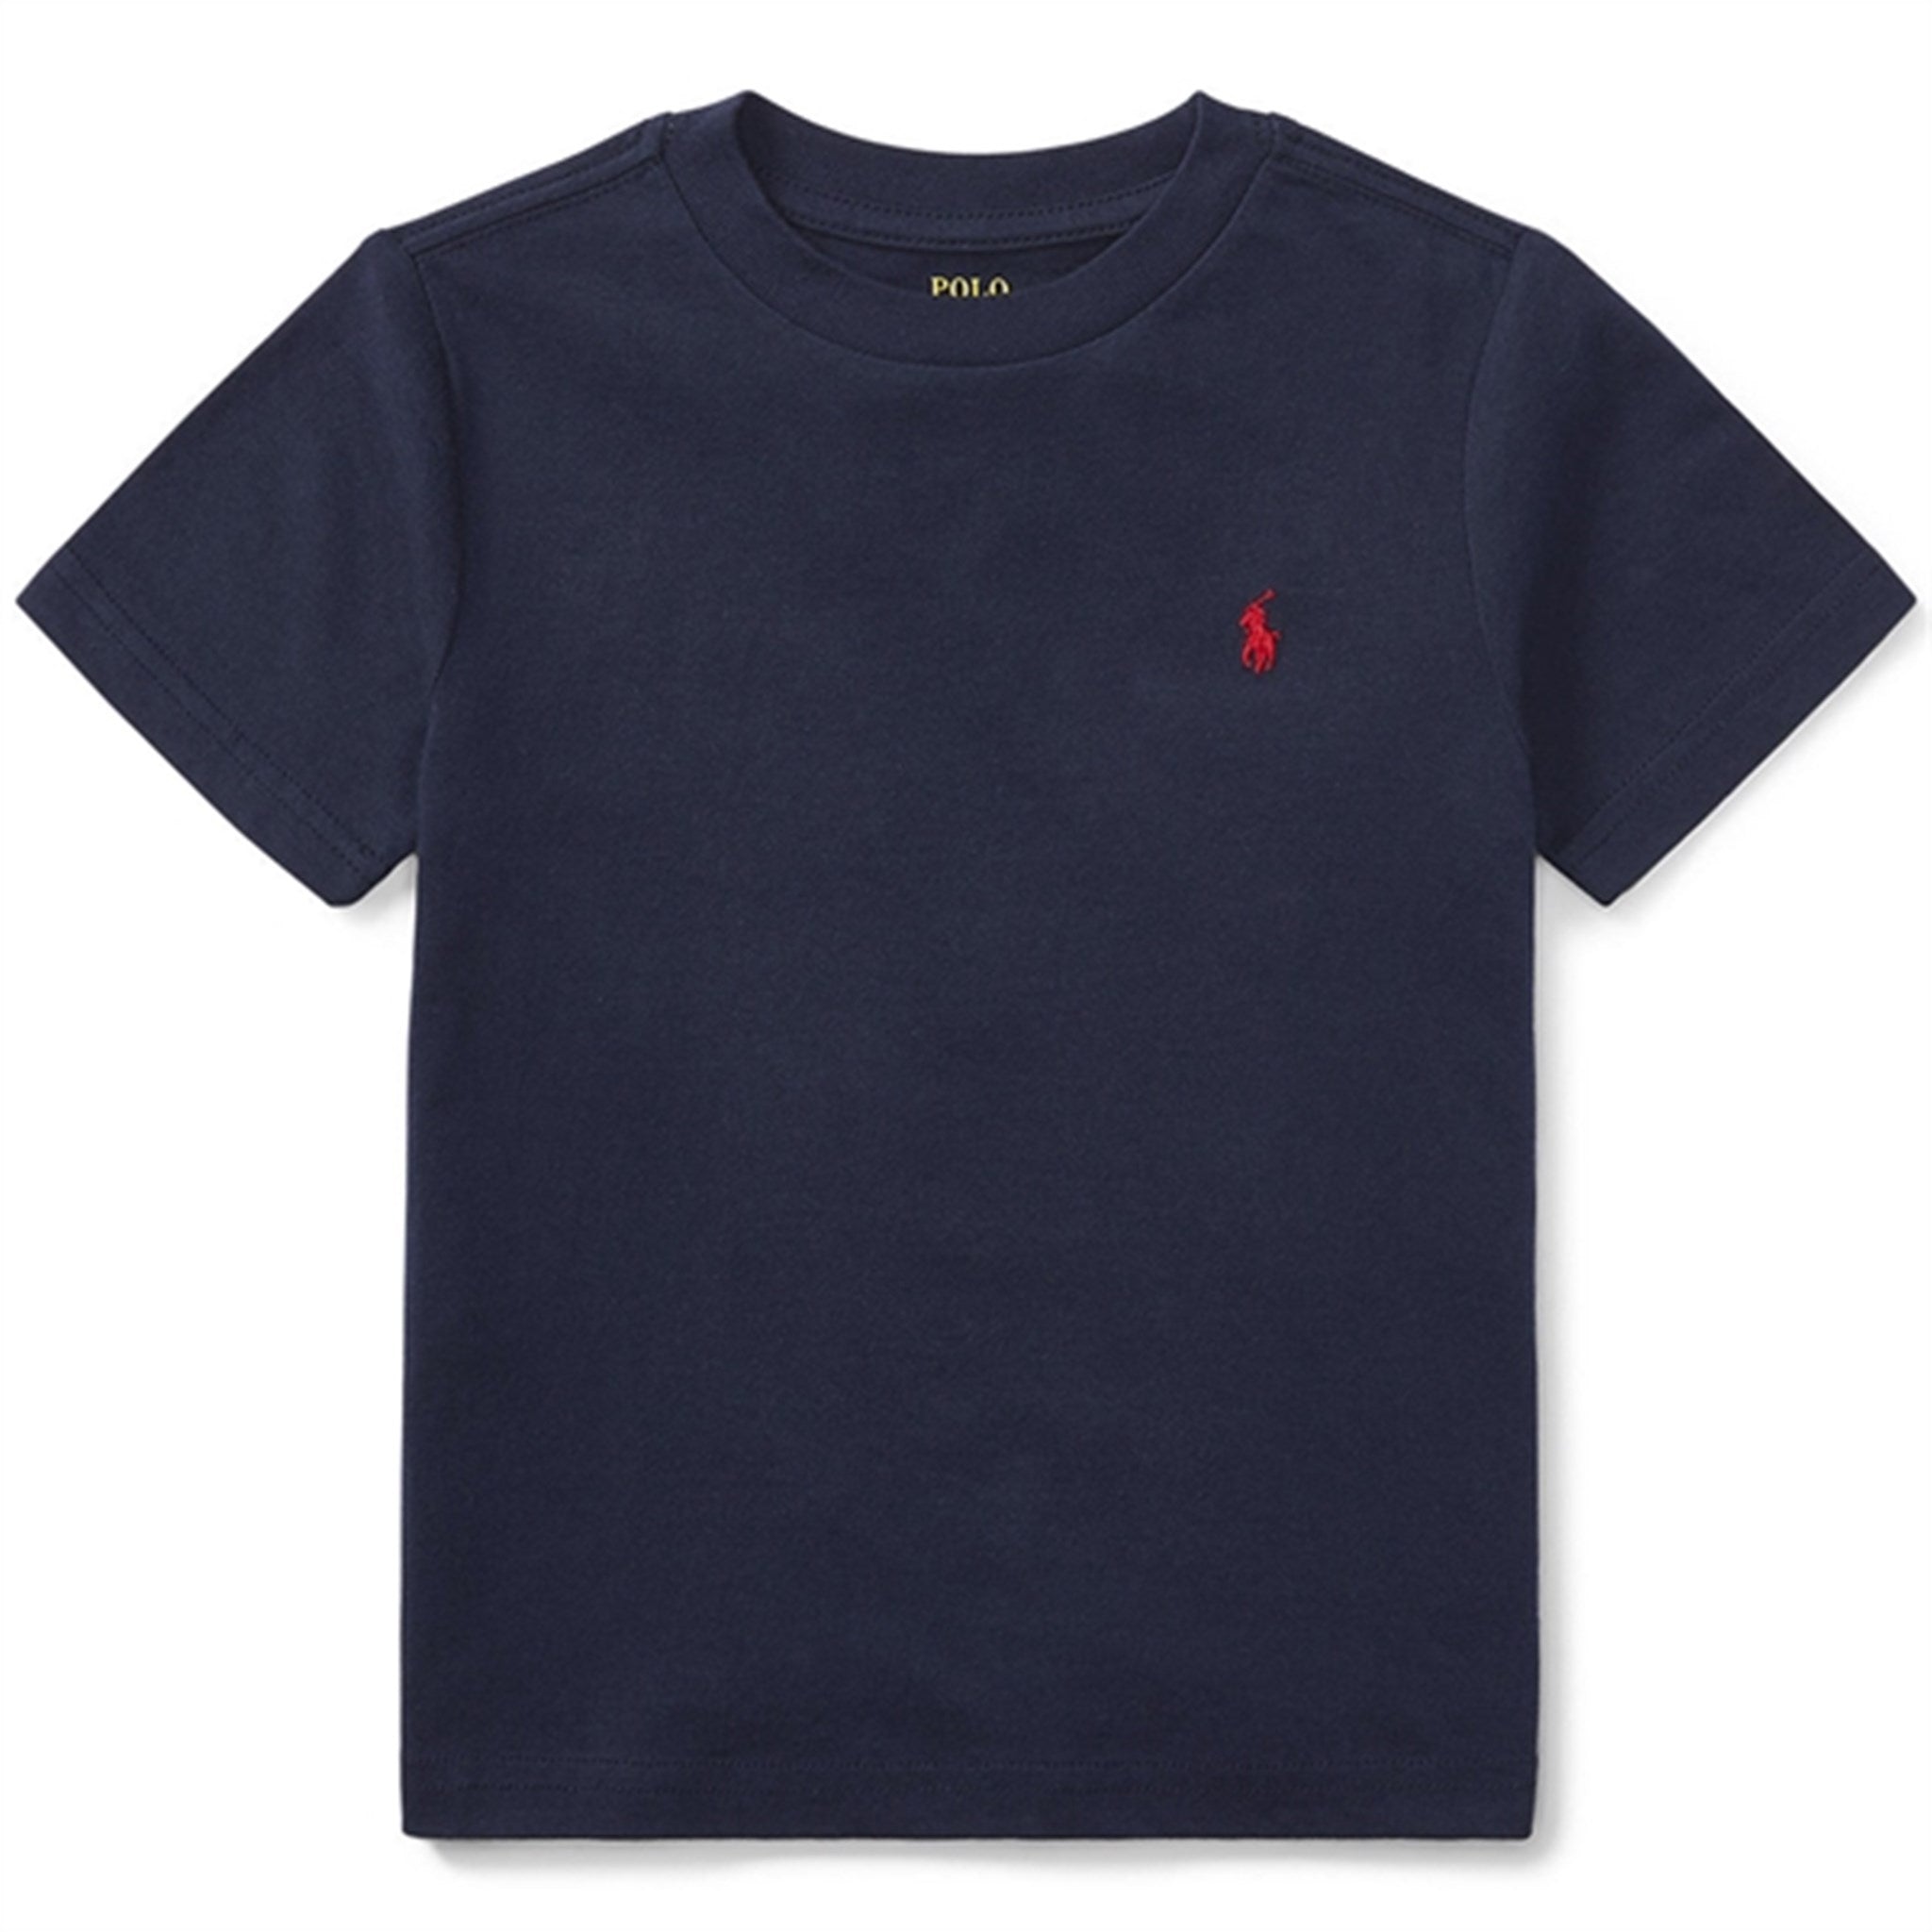 Polo Ralph Lauren Boy Short Sleeved T-shirt Cruise Navy